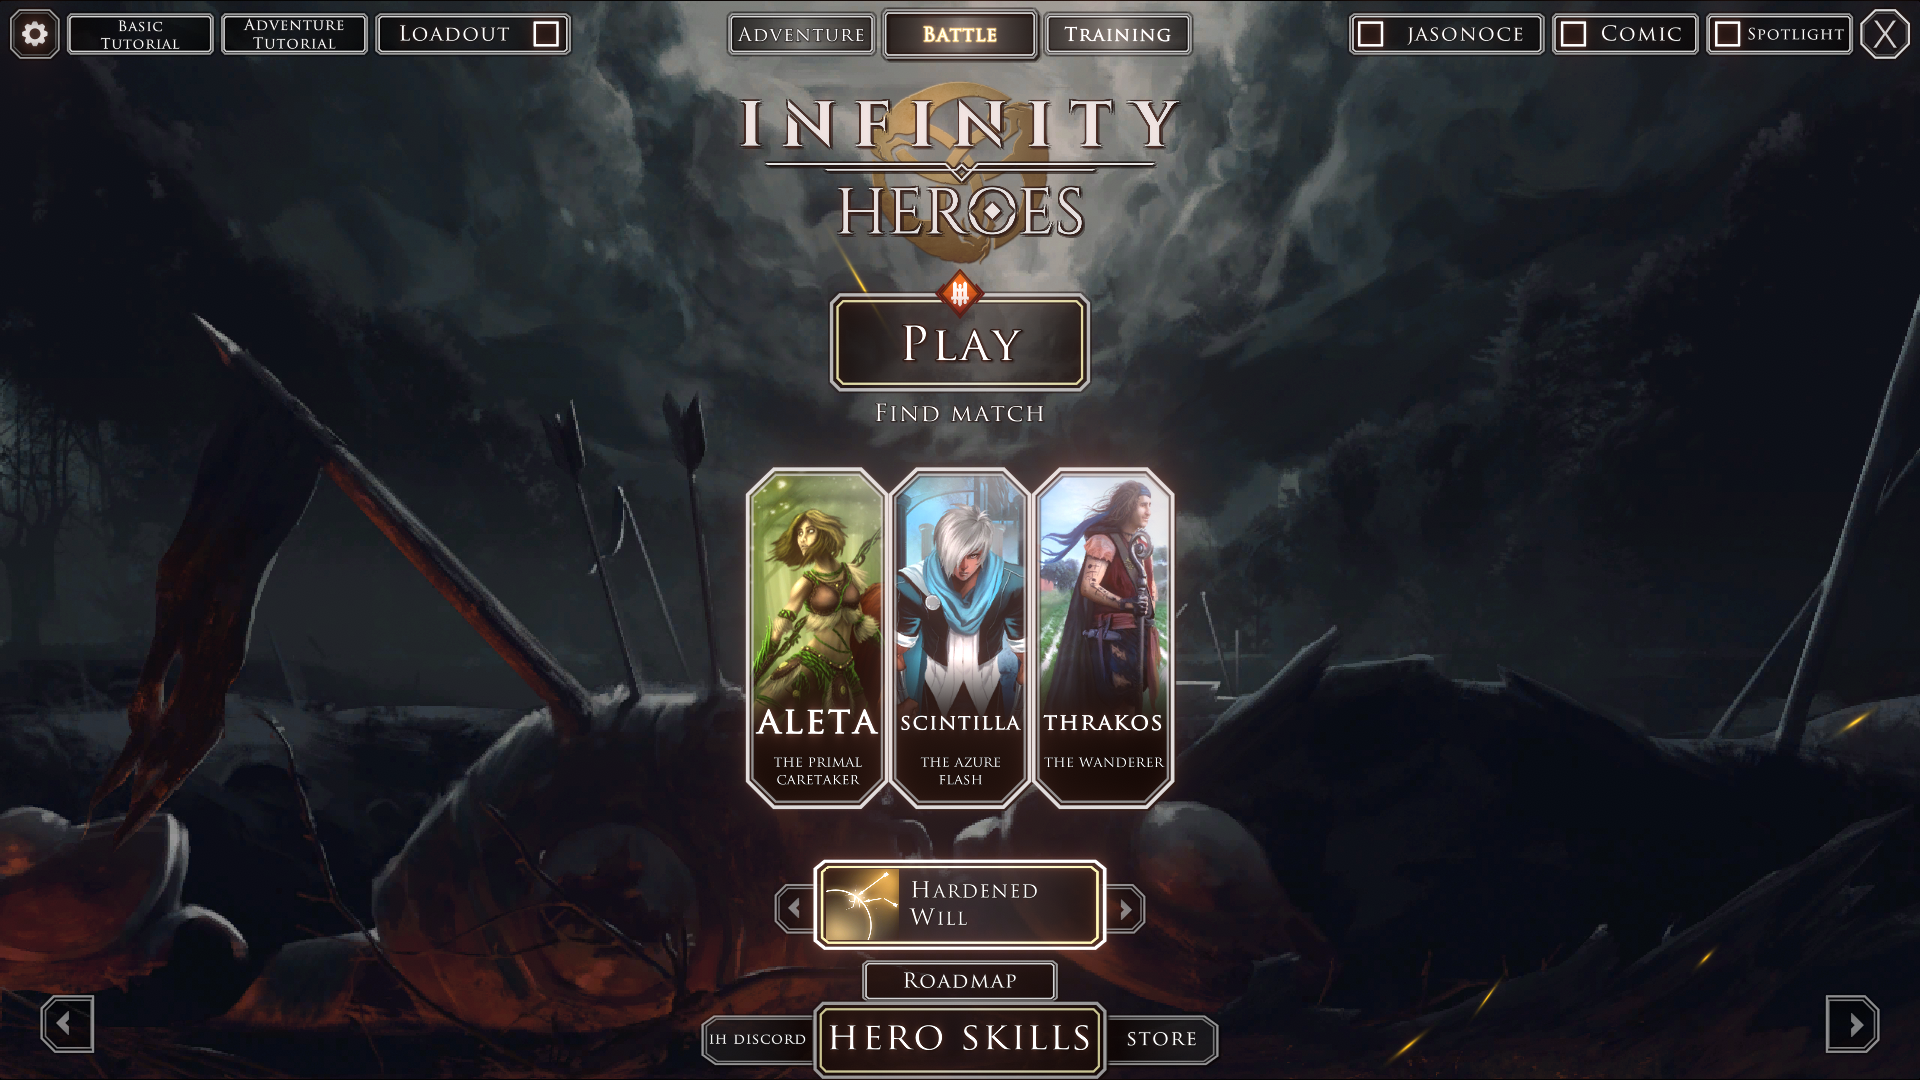 Infinity Heroes 0.9 update - new main menu